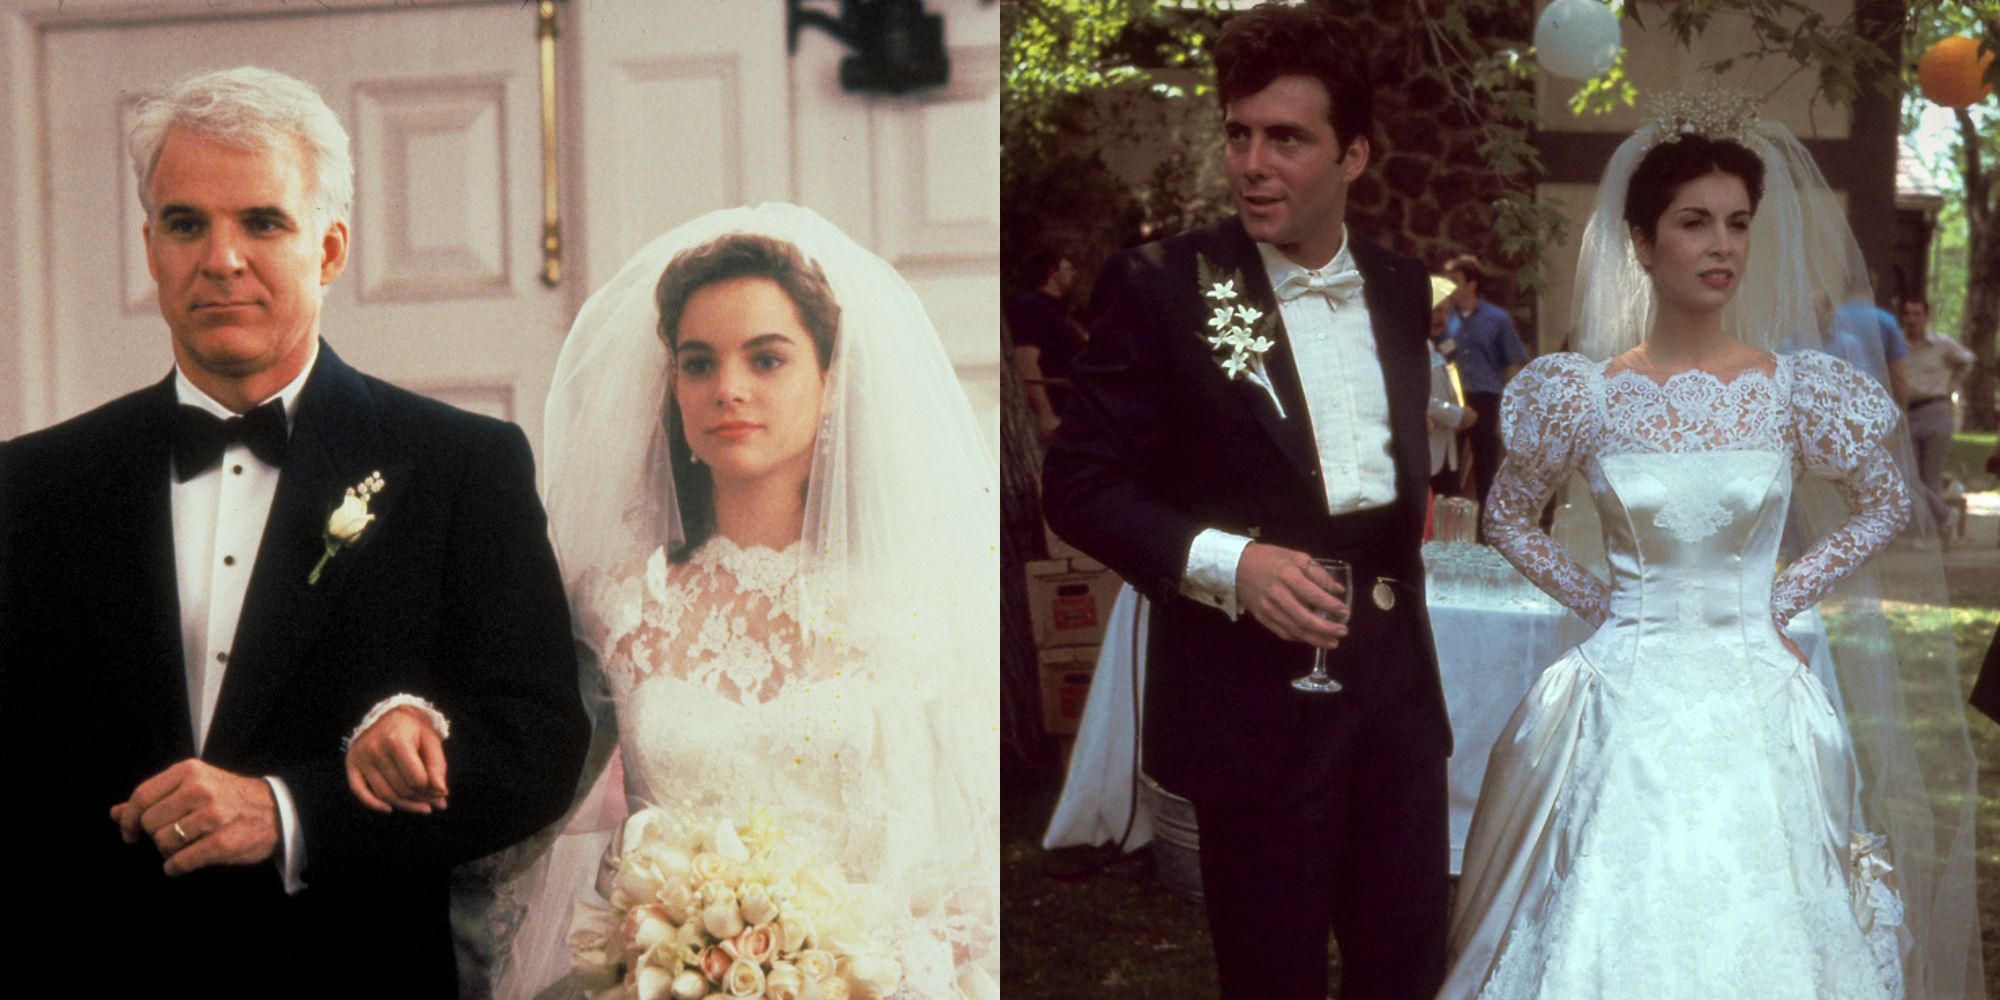 The 10 Best Movie Weddings